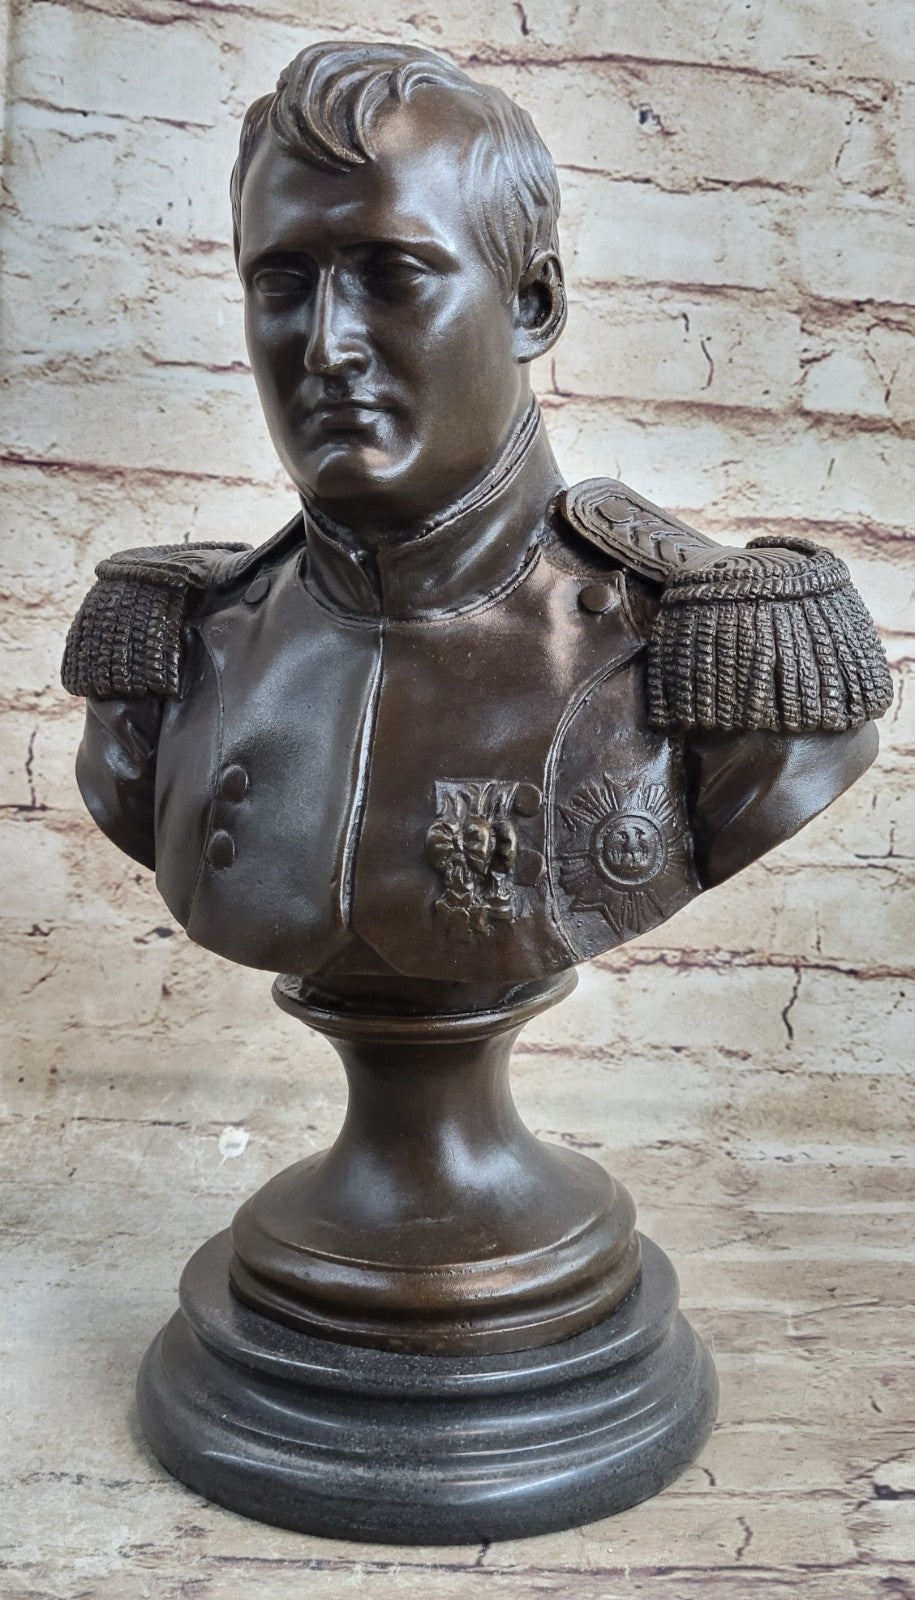 Maison / Bureau Art Décor Bronze Statue Historique Napoleon